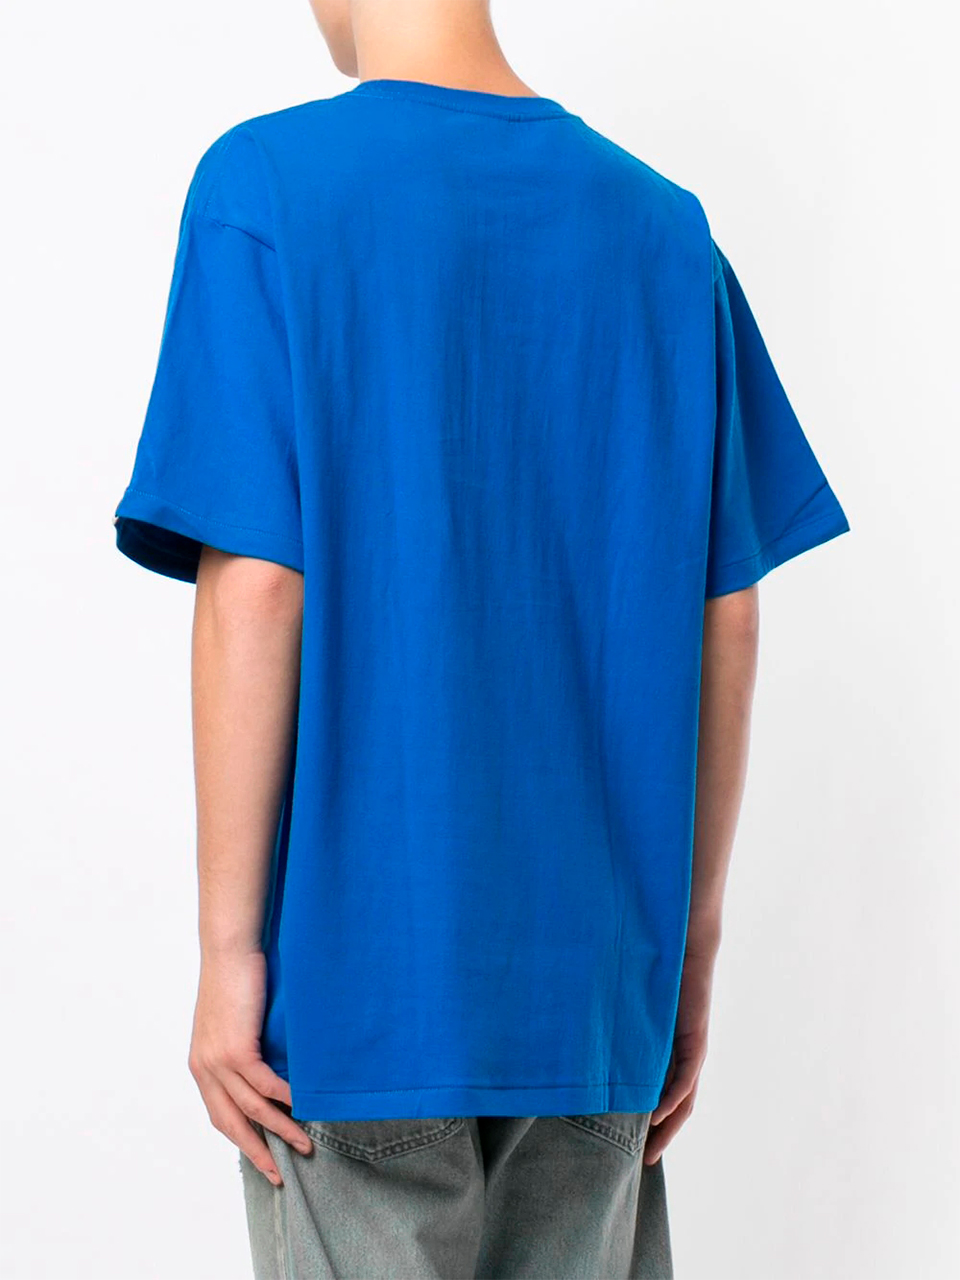 Imagem de: Camiseta BAPE Shark Azul